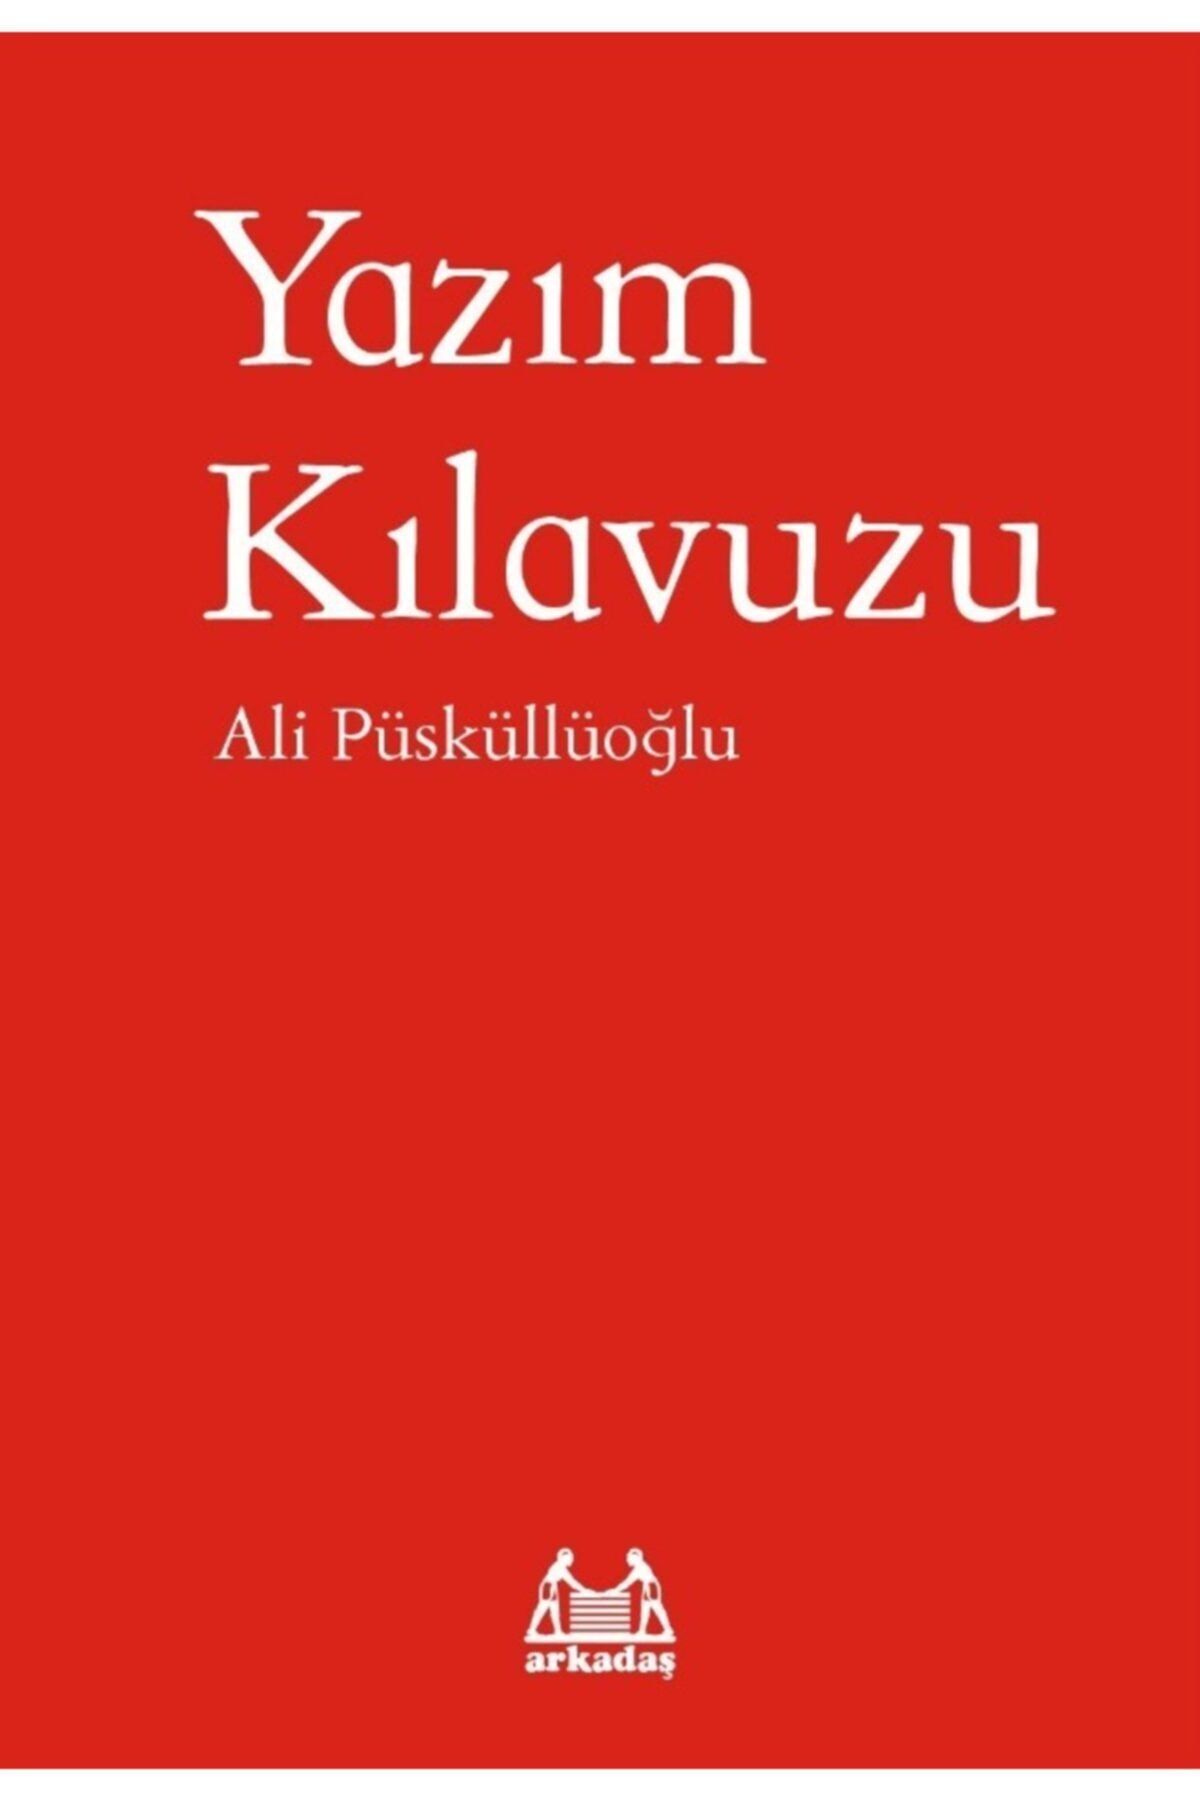 Arkadaş Yayıncılık Yazım Kılavuzu - Ali Püsküllüoğlu 9786057921642